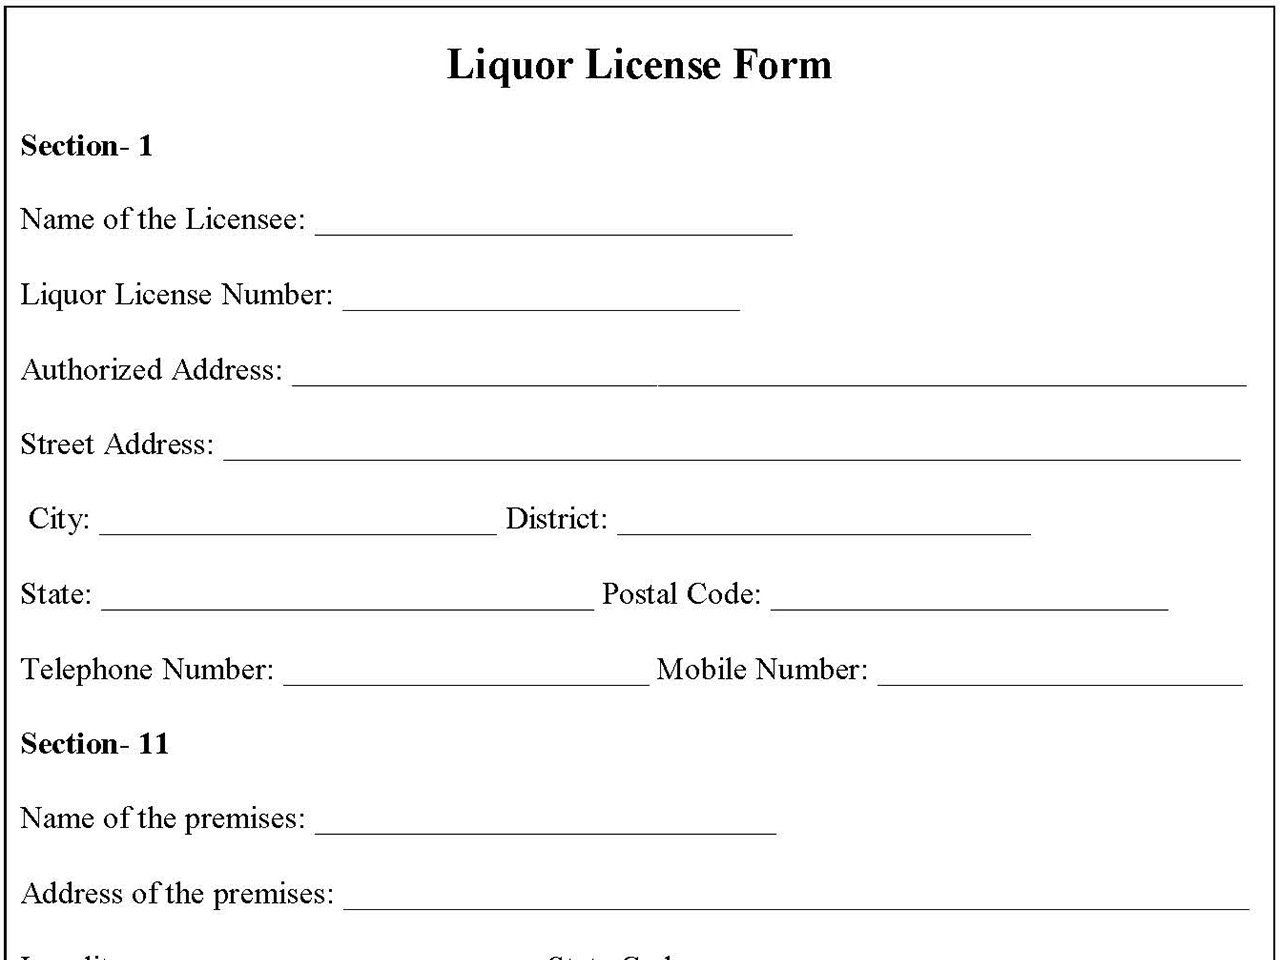 Liquor License Form